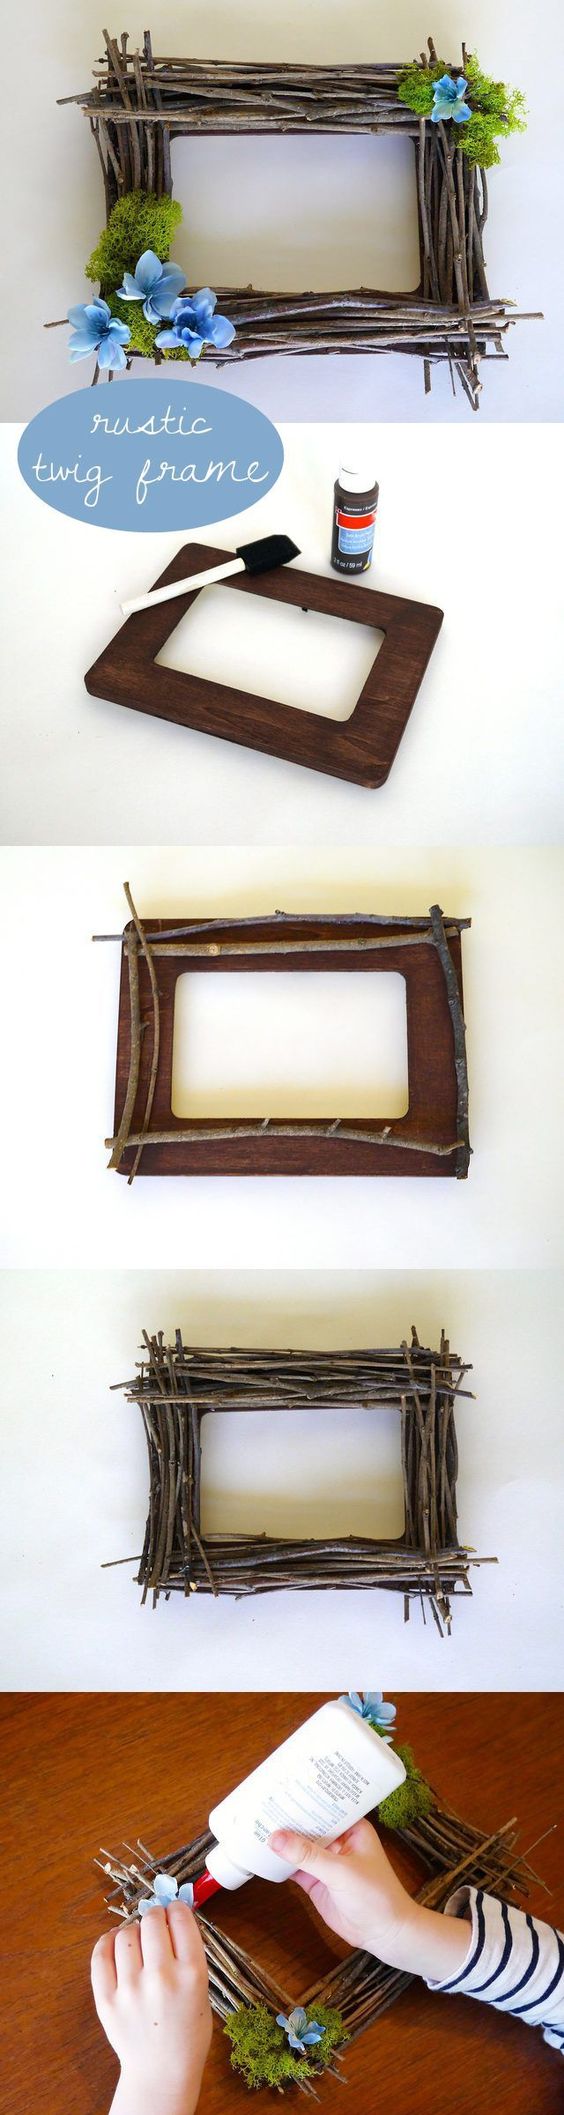 DIY Rustic Twig Frame.  